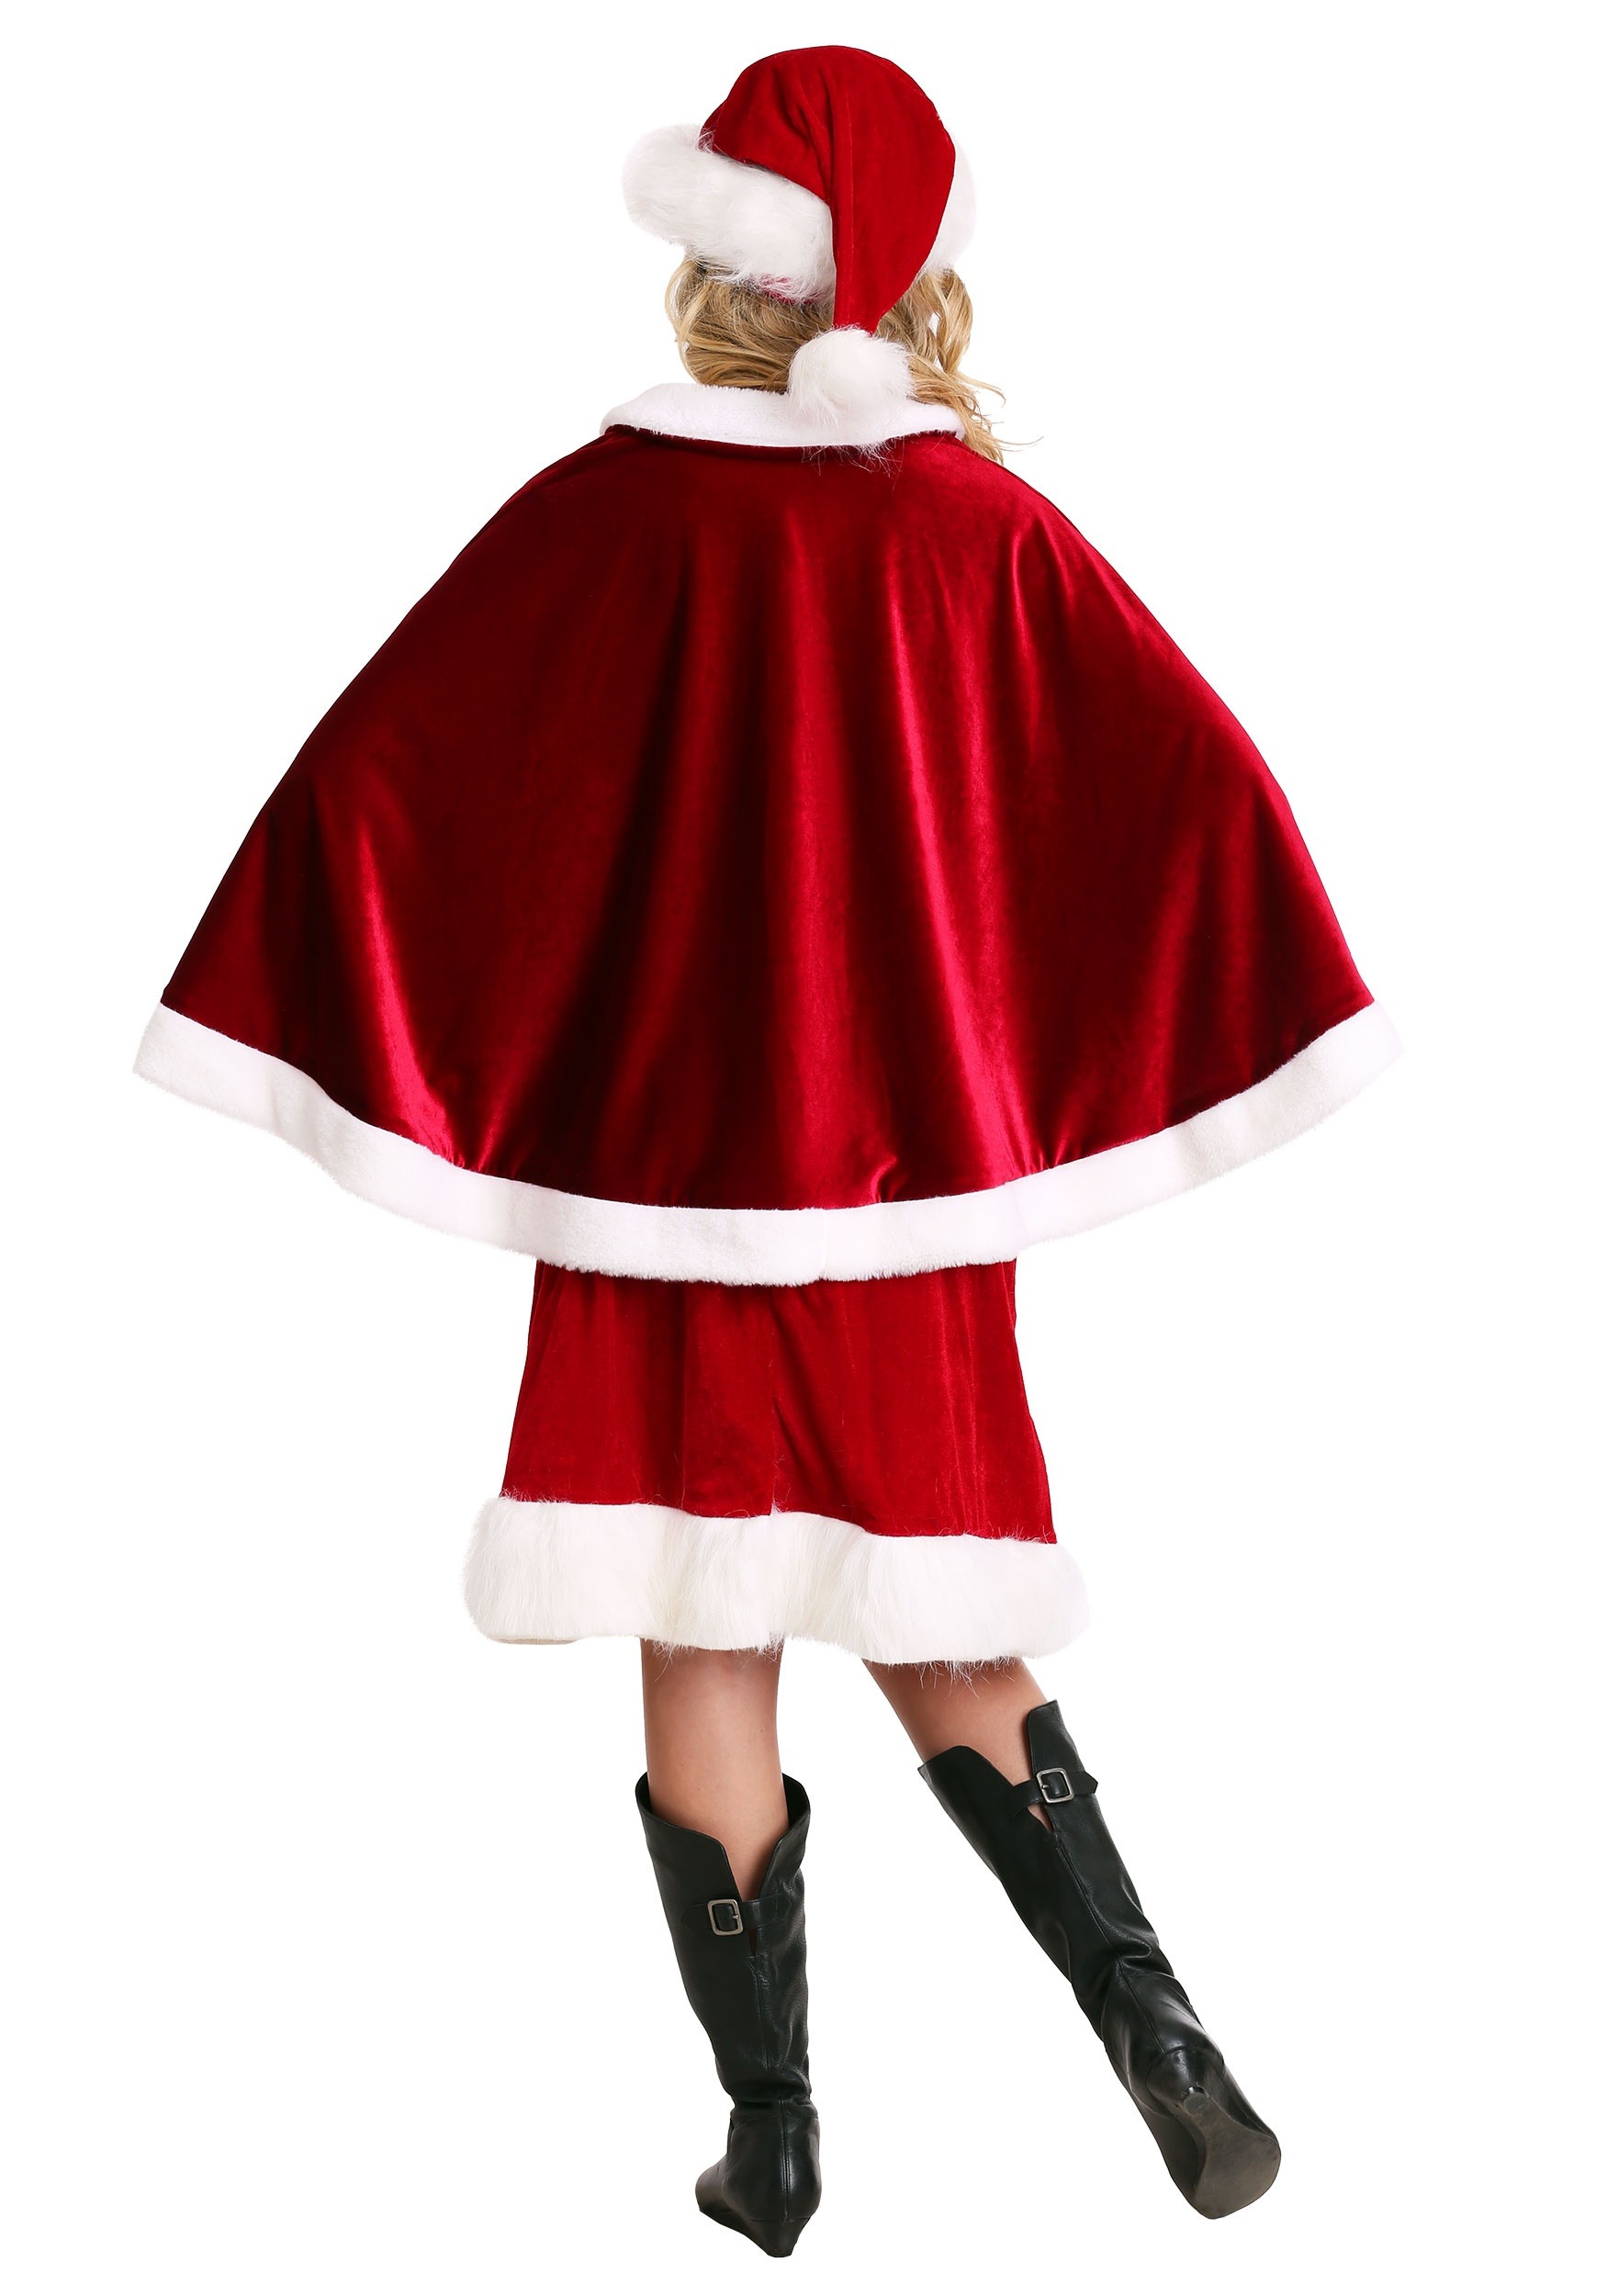 Details about   Christmas Cape Outfit Cloak Womens Ladies Fancy Dress Mrs Santa Claus Adult Miss